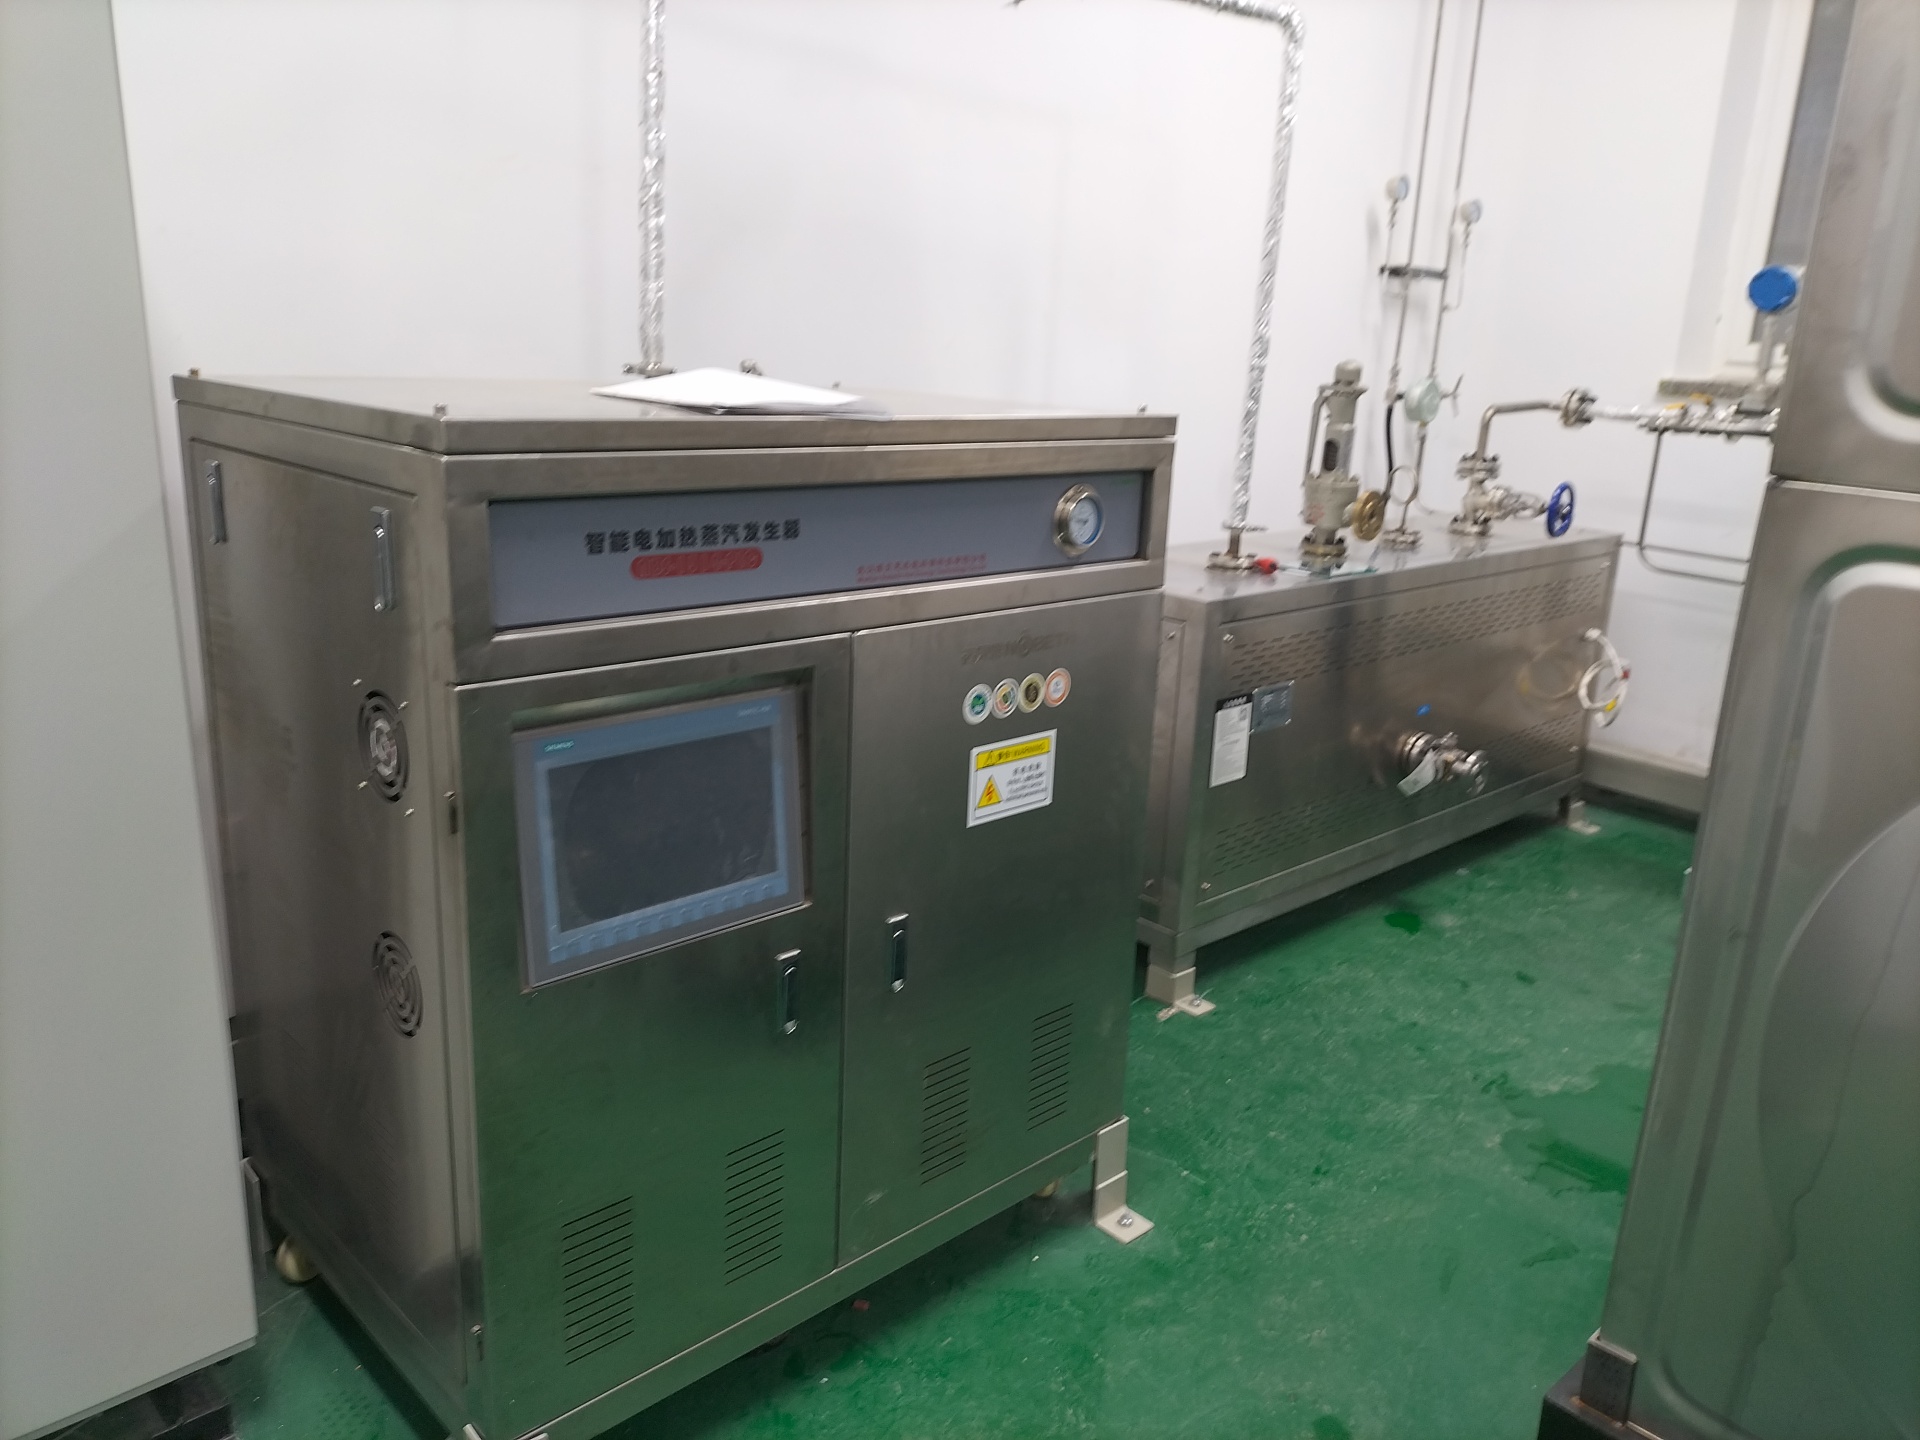 天津工业大学购置高温高压蒸汽发生器用于实验研究